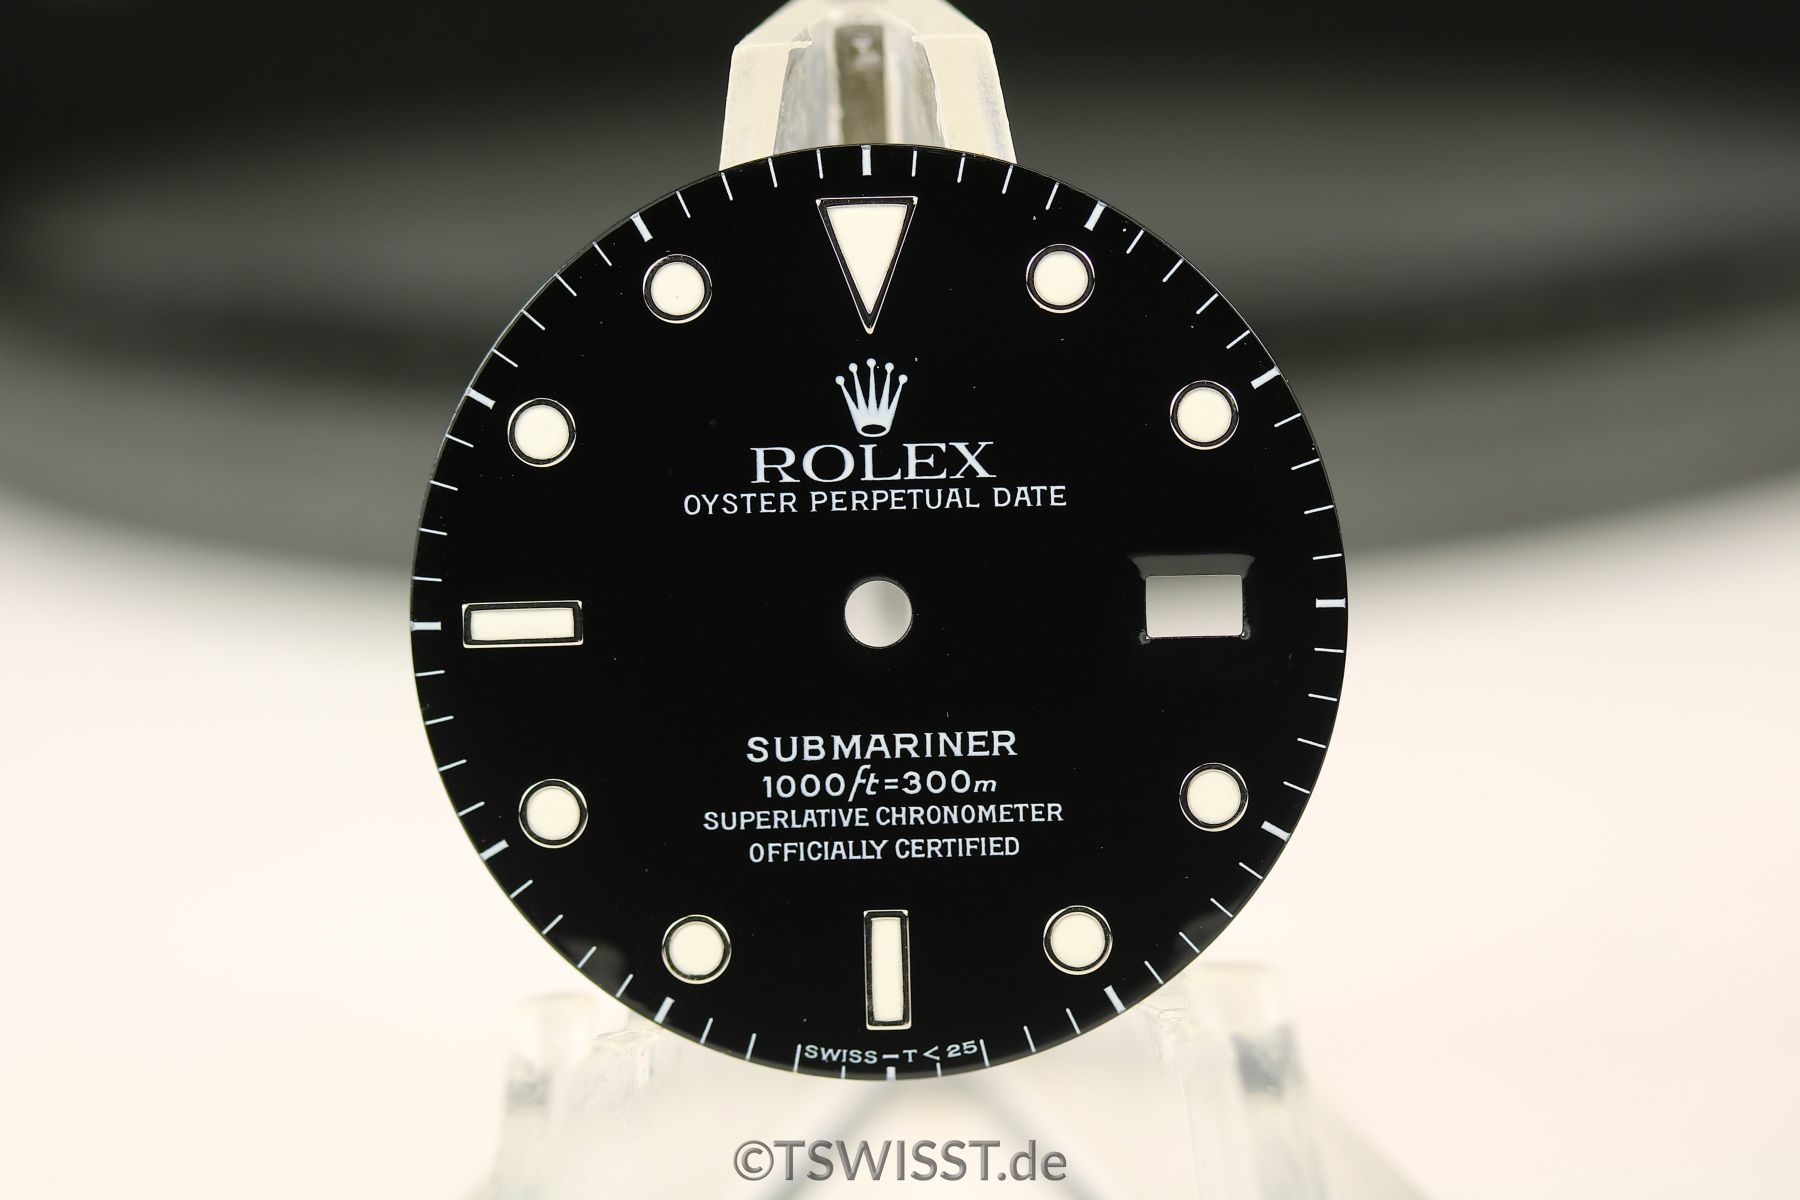 Rolex Submariner 16610 dial